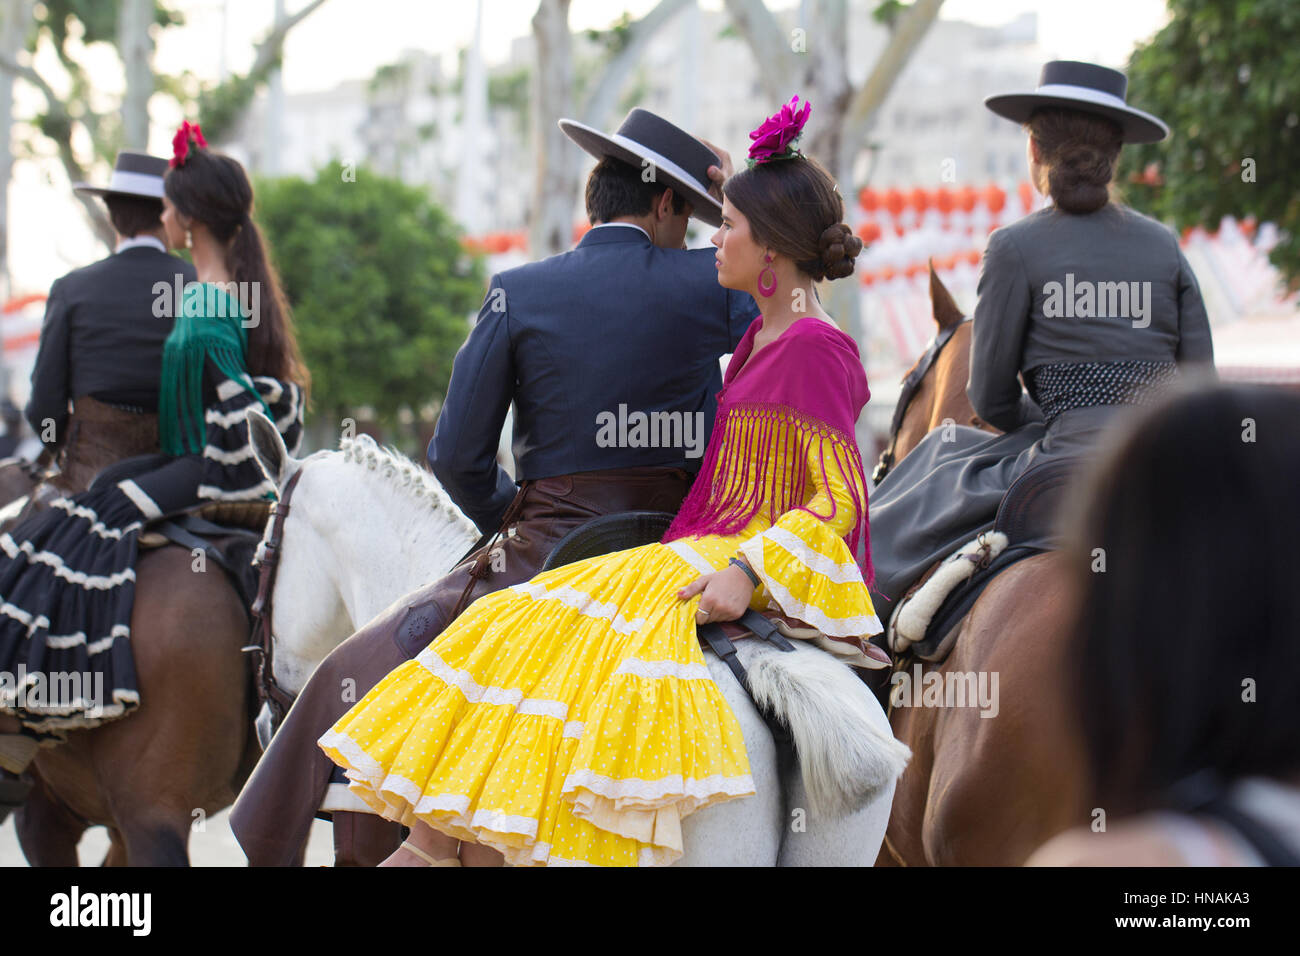 Siviglia, Spagna - Apr, 25: persone in costumi tradizionali di equitazione a Siviglia la fiera di aprile in aprile, 25, 2014 a Siviglia, Spagna Foto Stock